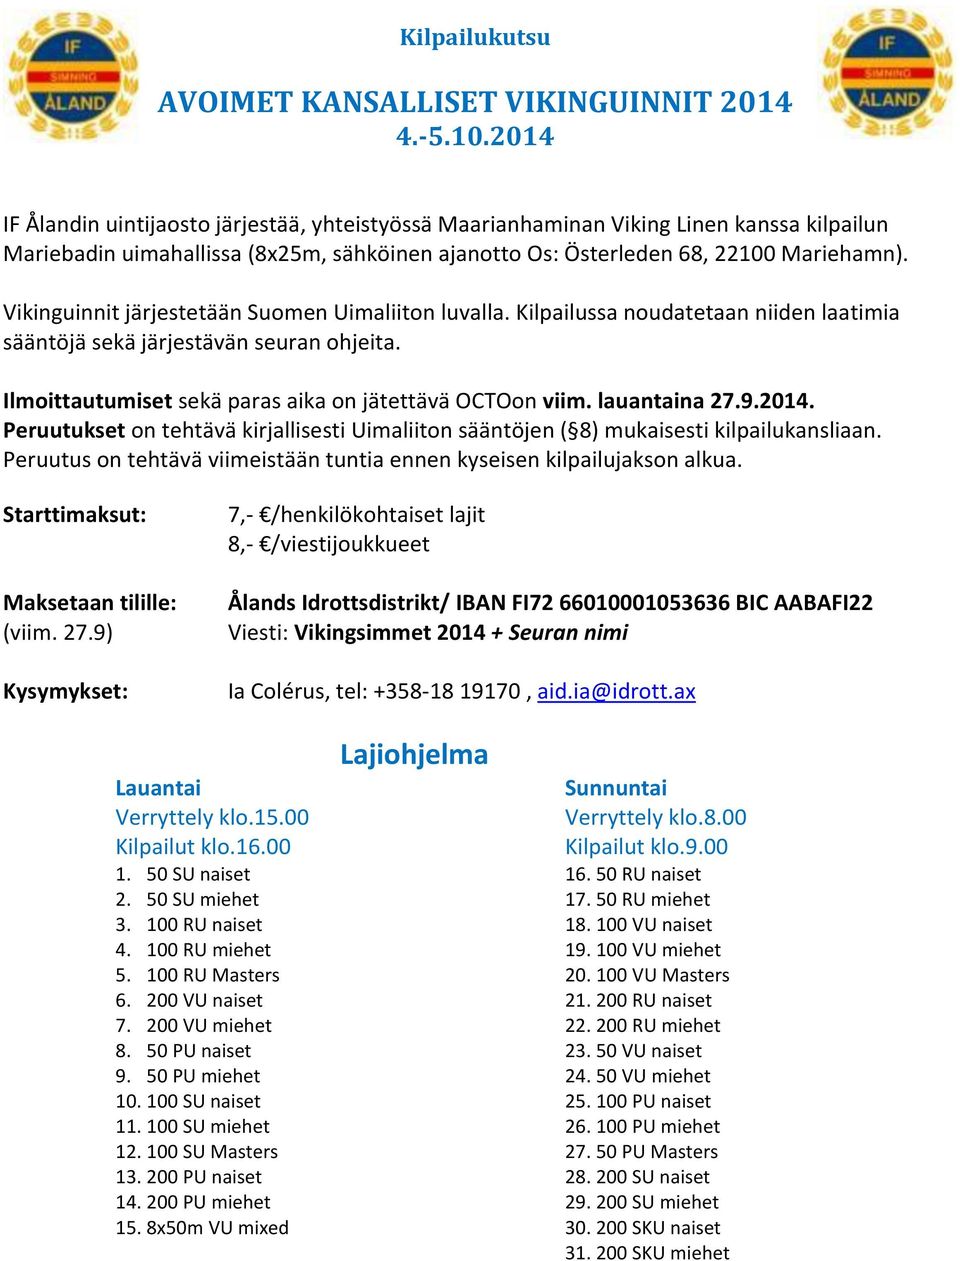 Vikinguinnit järjestetään Suomen Uimaliiton luvalla. Kilpailussa noudatetaan niiden laatimia sääntöjä sekä järjestävän seuran ohjeita. Ilmoittautumiset sekä paras aika on jätettävä OCTOon viim.